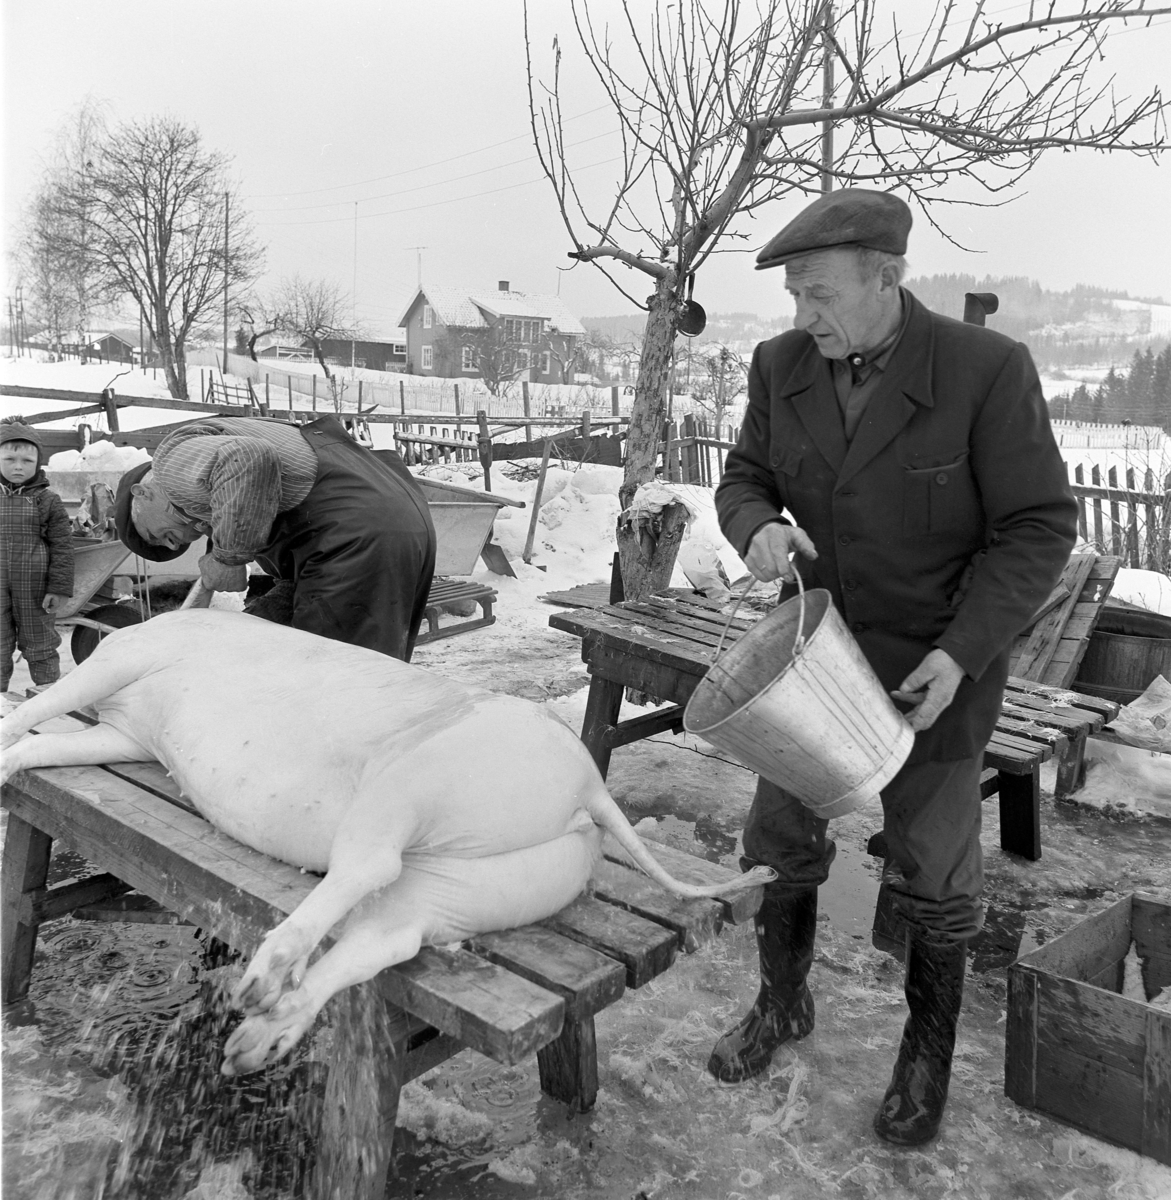 Dokumentasjon av griseslakting i 1977, på Lunde i Gaupen, Ringsaker. Bygdeslakter. Bygdeslakter Johs. Rosenborg. Kaldt vann helles på for å kjøle ned grisen før oppdeling.